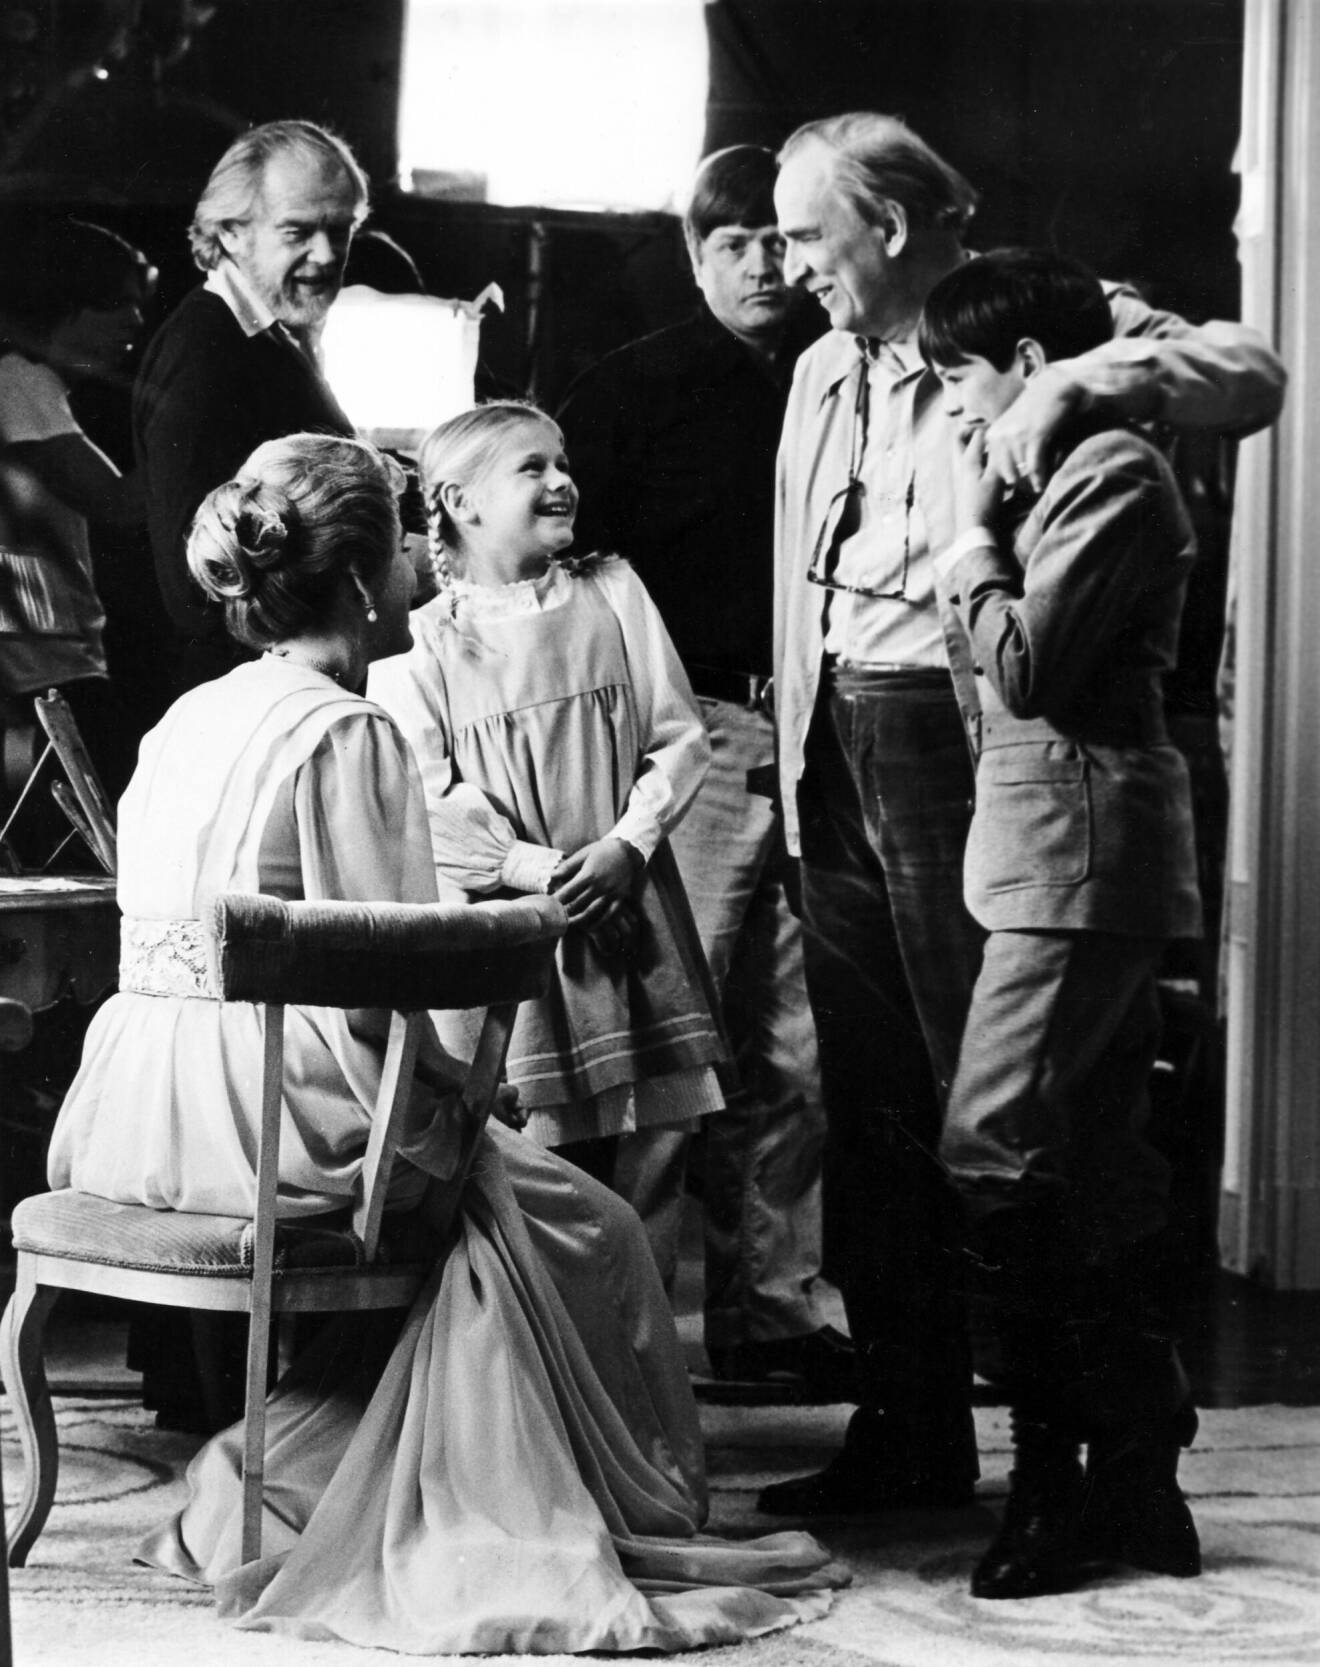 Fanny och alexander med Ingmar Bergman under inspelningen av Fanny och Alexander.